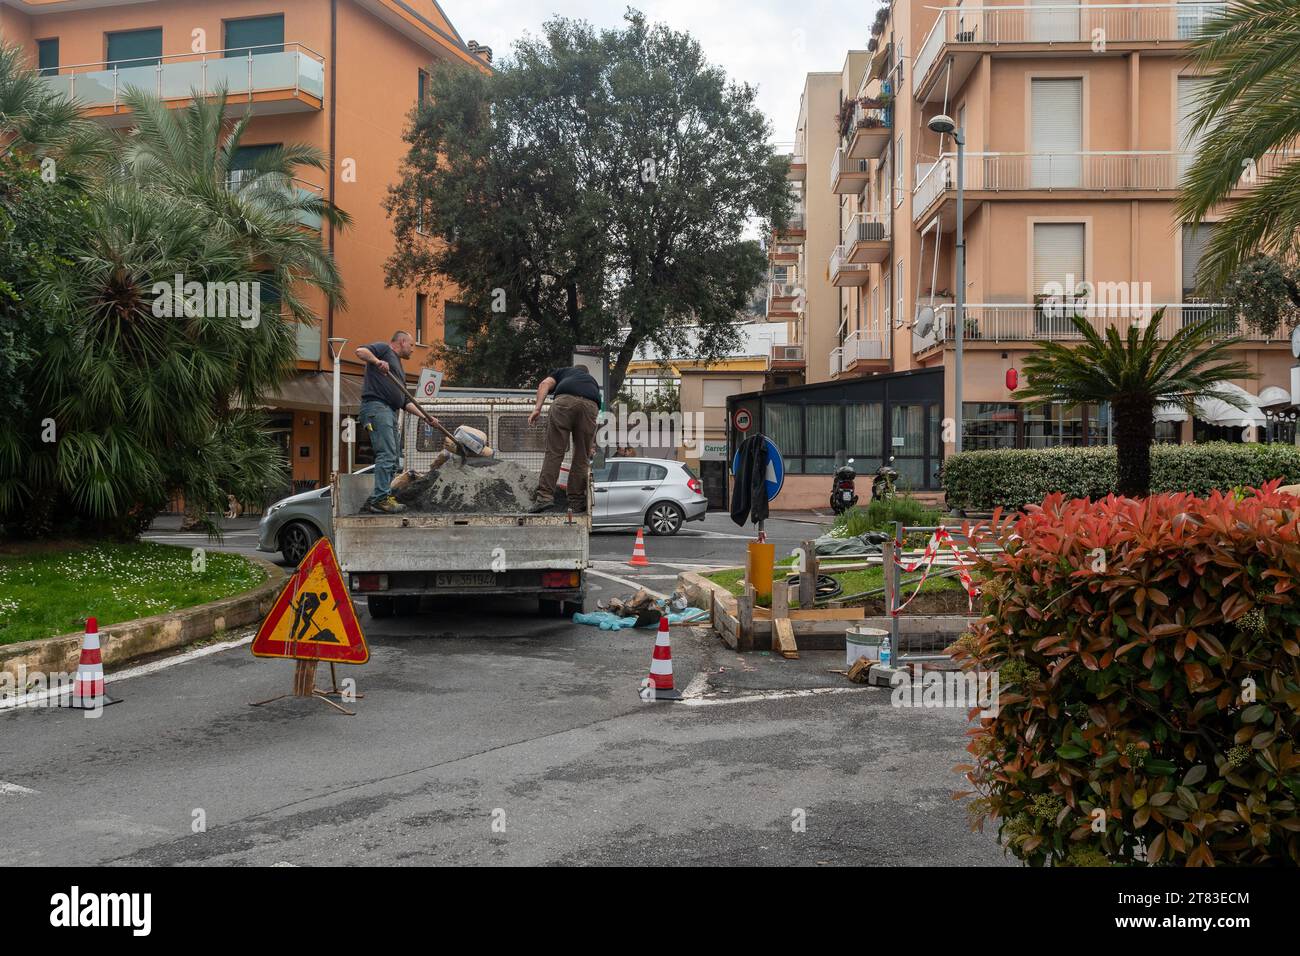 Operai comunali su furgone per la ricostruzione del cordolo di un divisore di traffico inondato nel centro di finale Ligure, Savona, Liguria, Italia Foto Stock